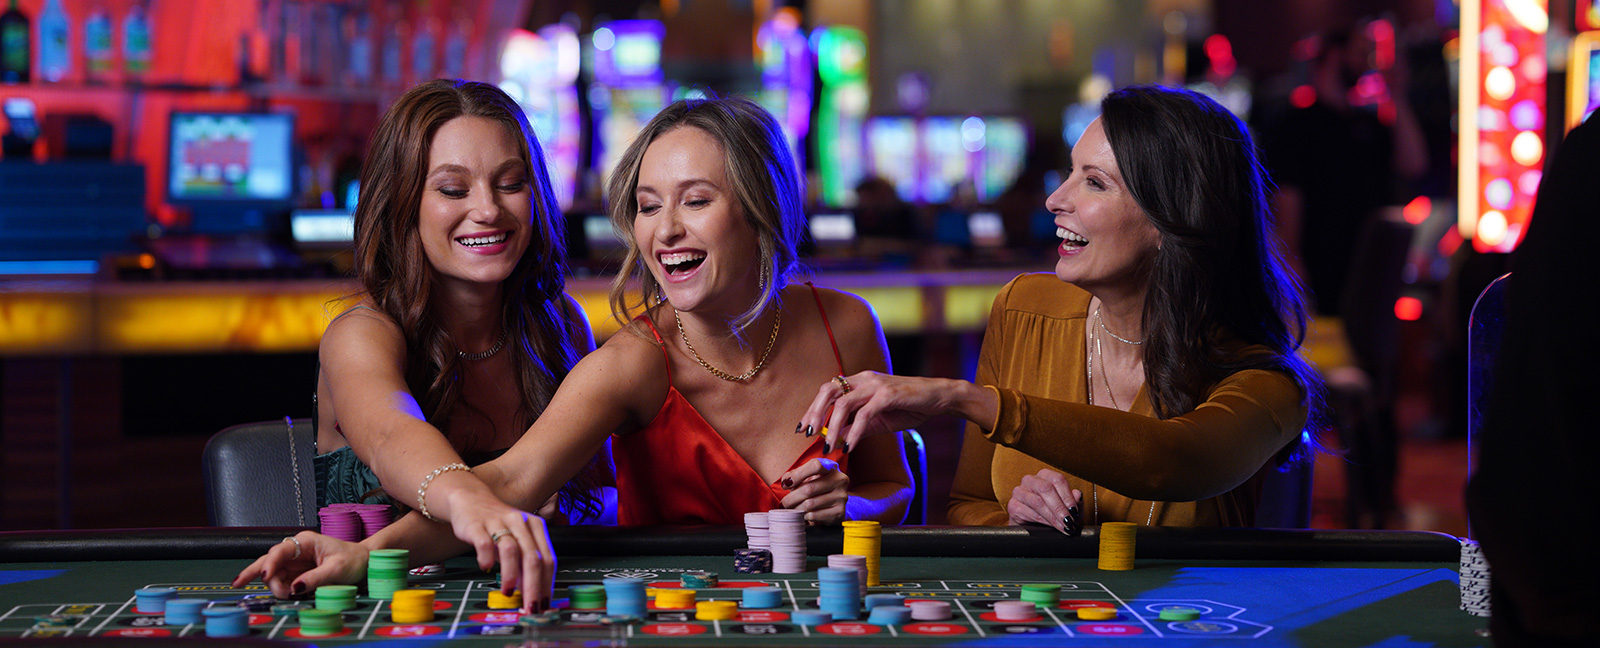 Wer ist Ihr die besten Online Casinos -Kunde?